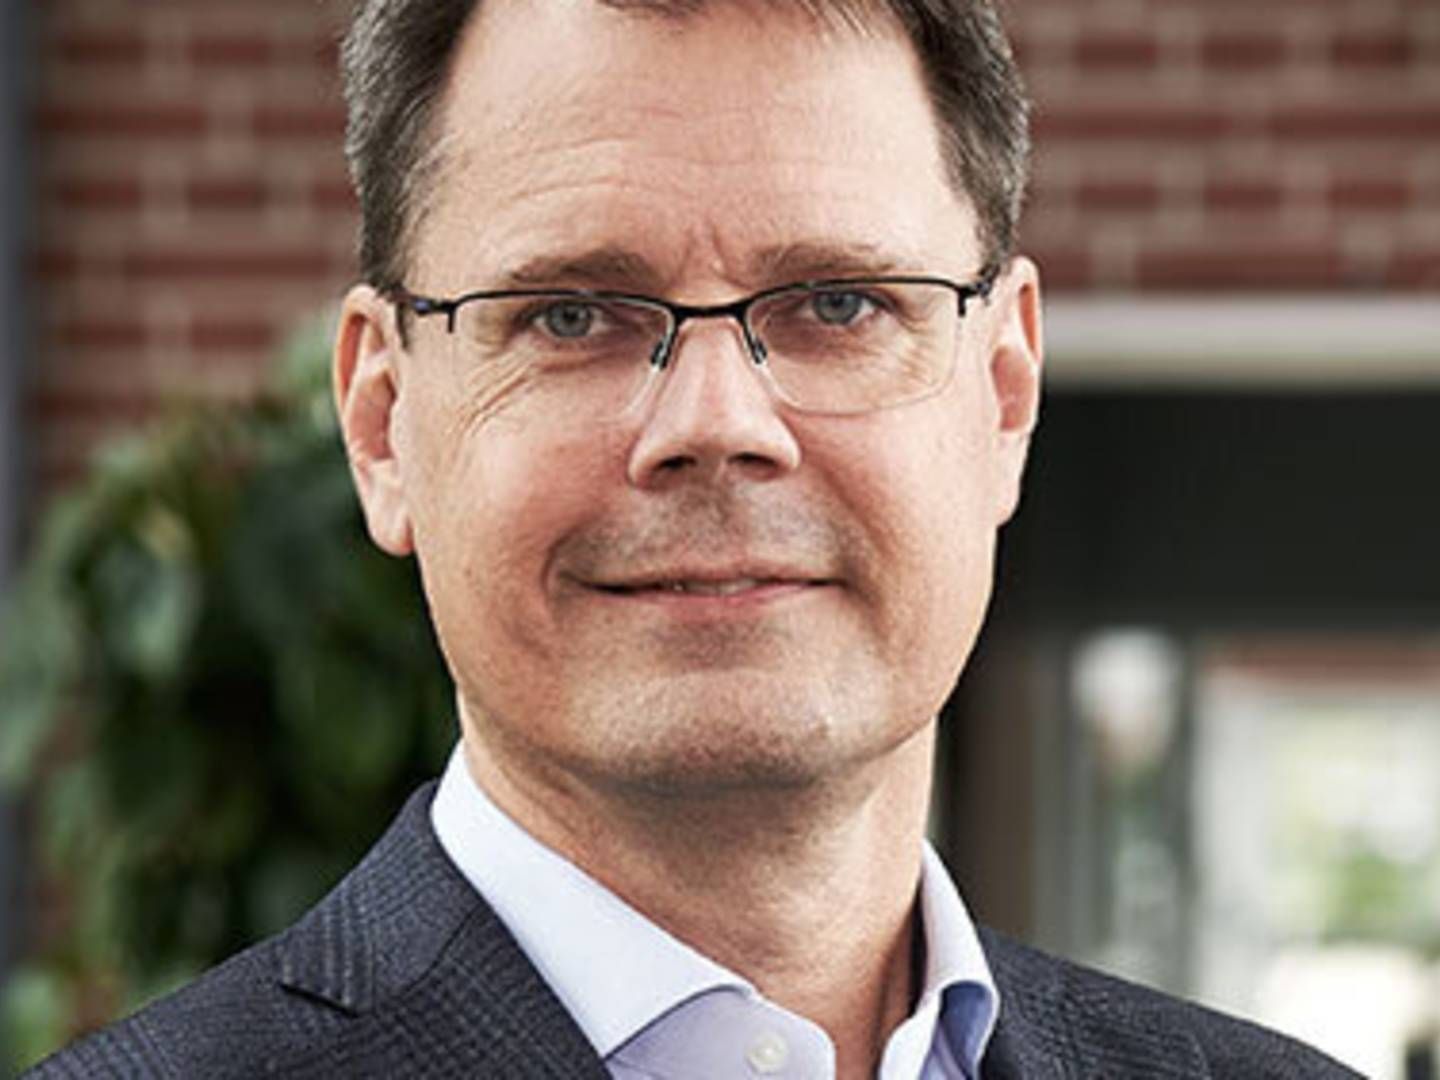 Thomas Kongstad Petersen, COO i NMD Pharma, er blevet indstillet til en plads i bestyrelsen hos Dansk Biotek | Foto: NMD Pharma / PR